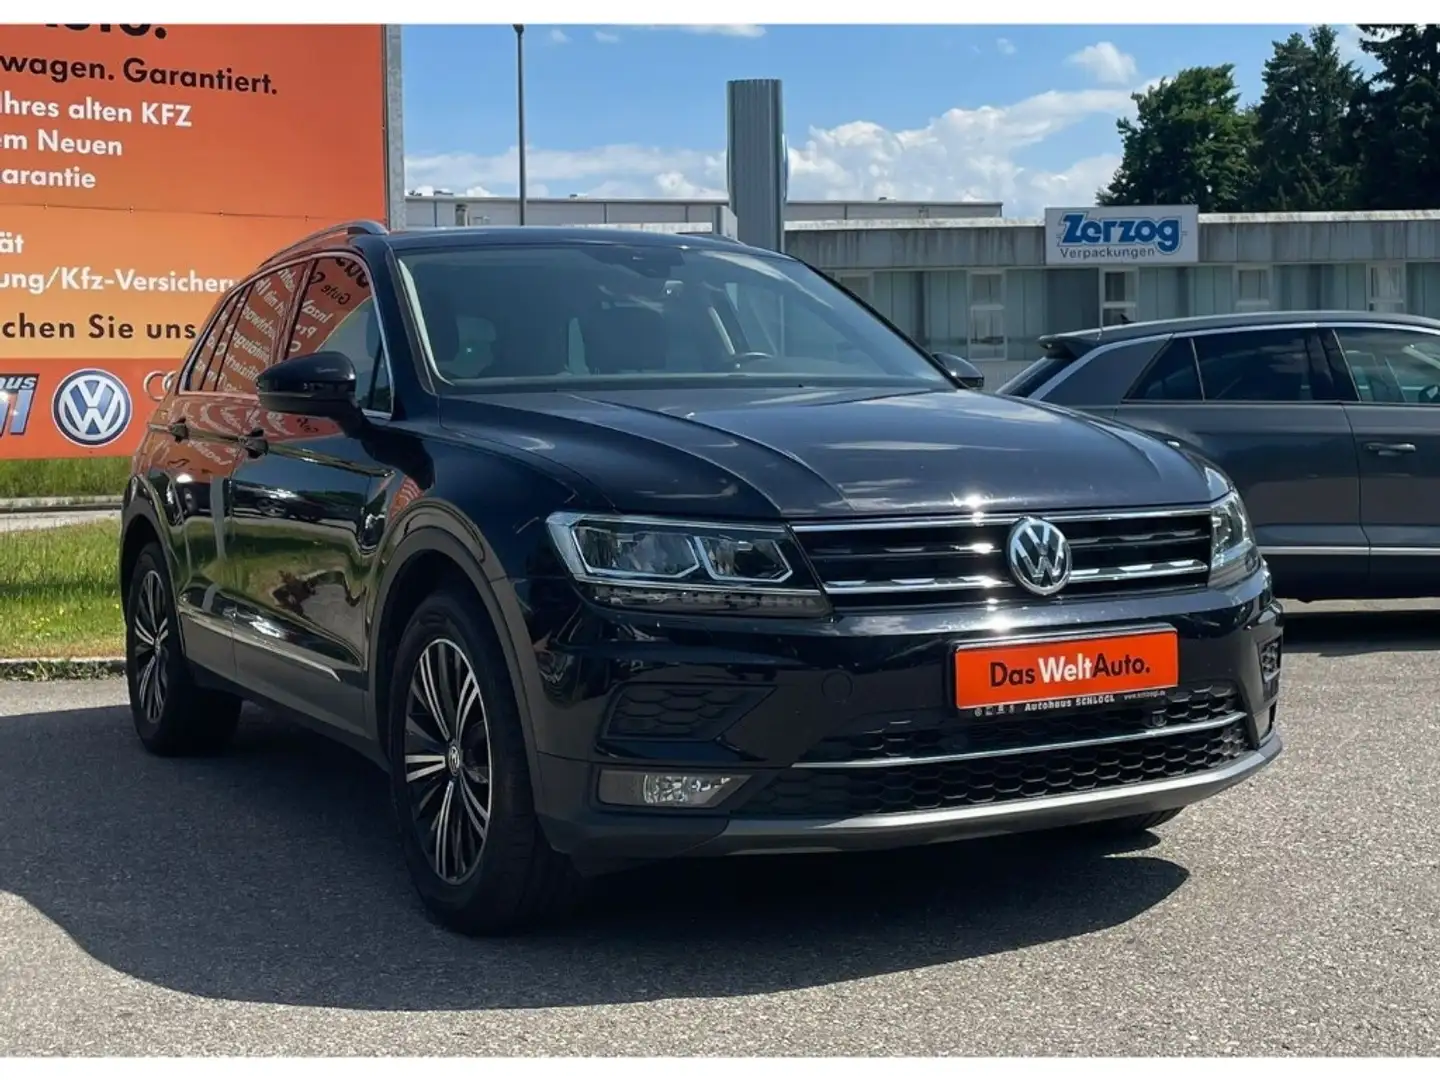 Volkswagen in Traunreut gebraucht kaufen